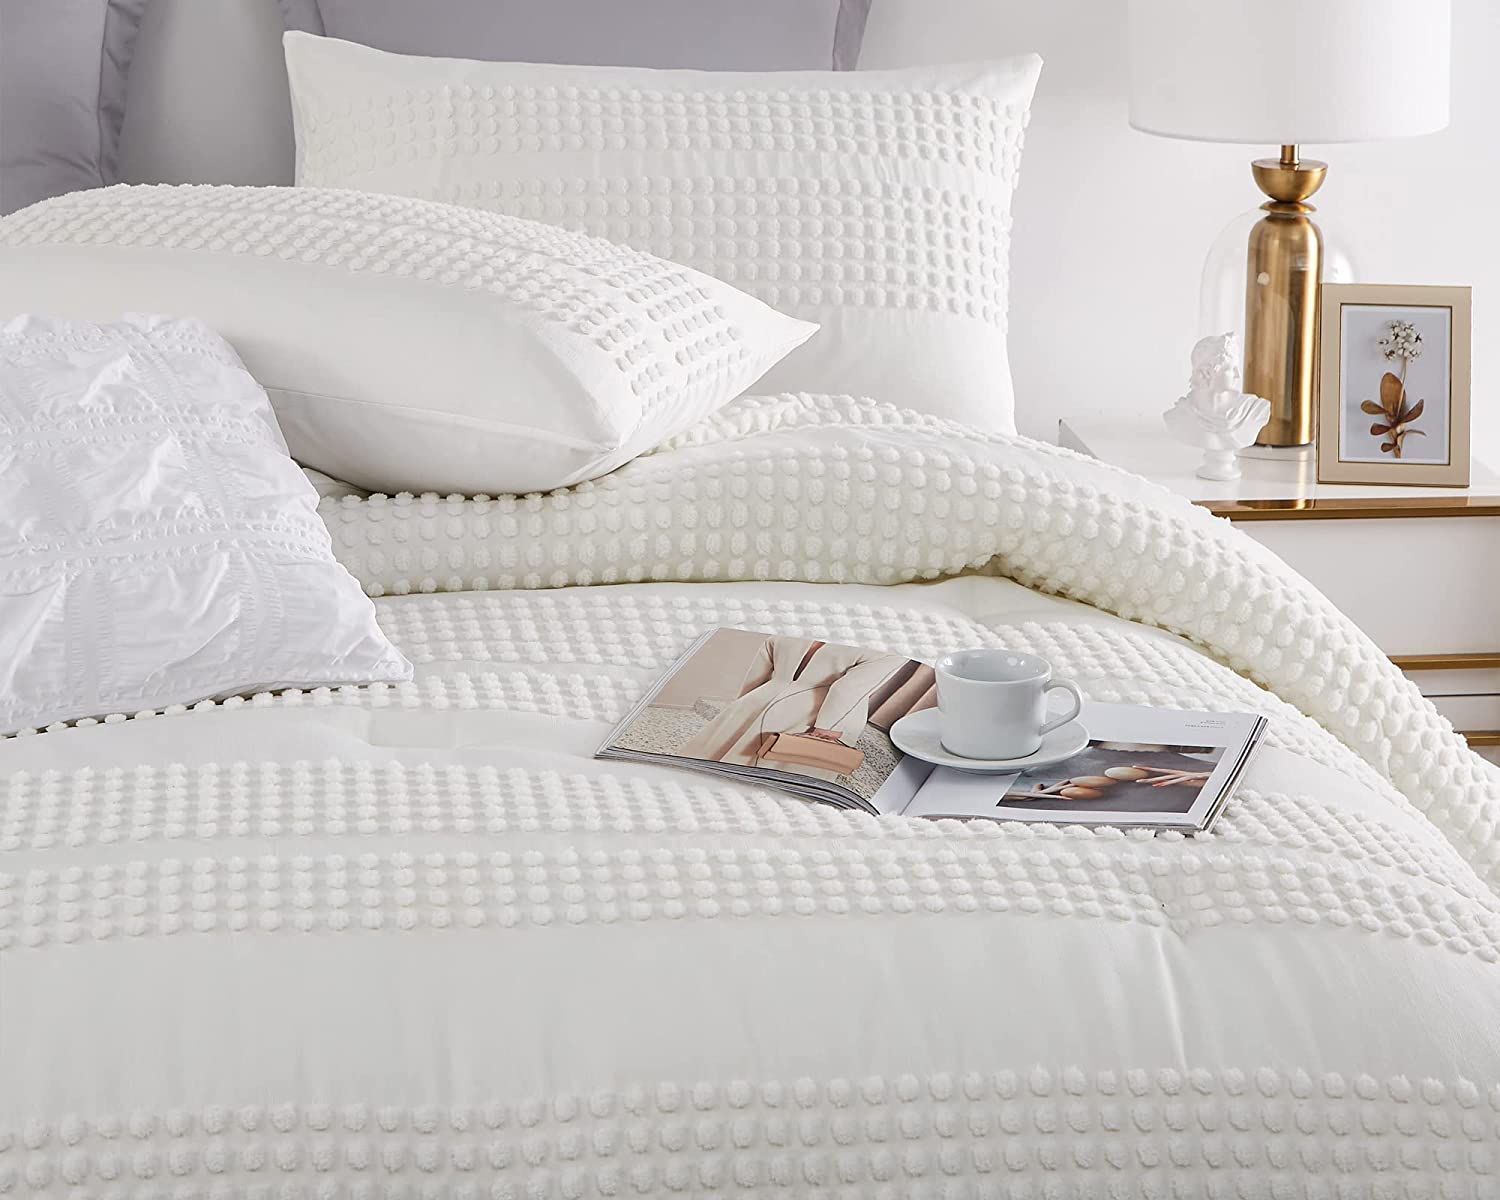 Houseri White Comforter Set Queen Boho Comforter Sets Full Size White  Tufted Jacquard Bedding Sets Q…See more Houseri White Comforter Set Queen  Boho